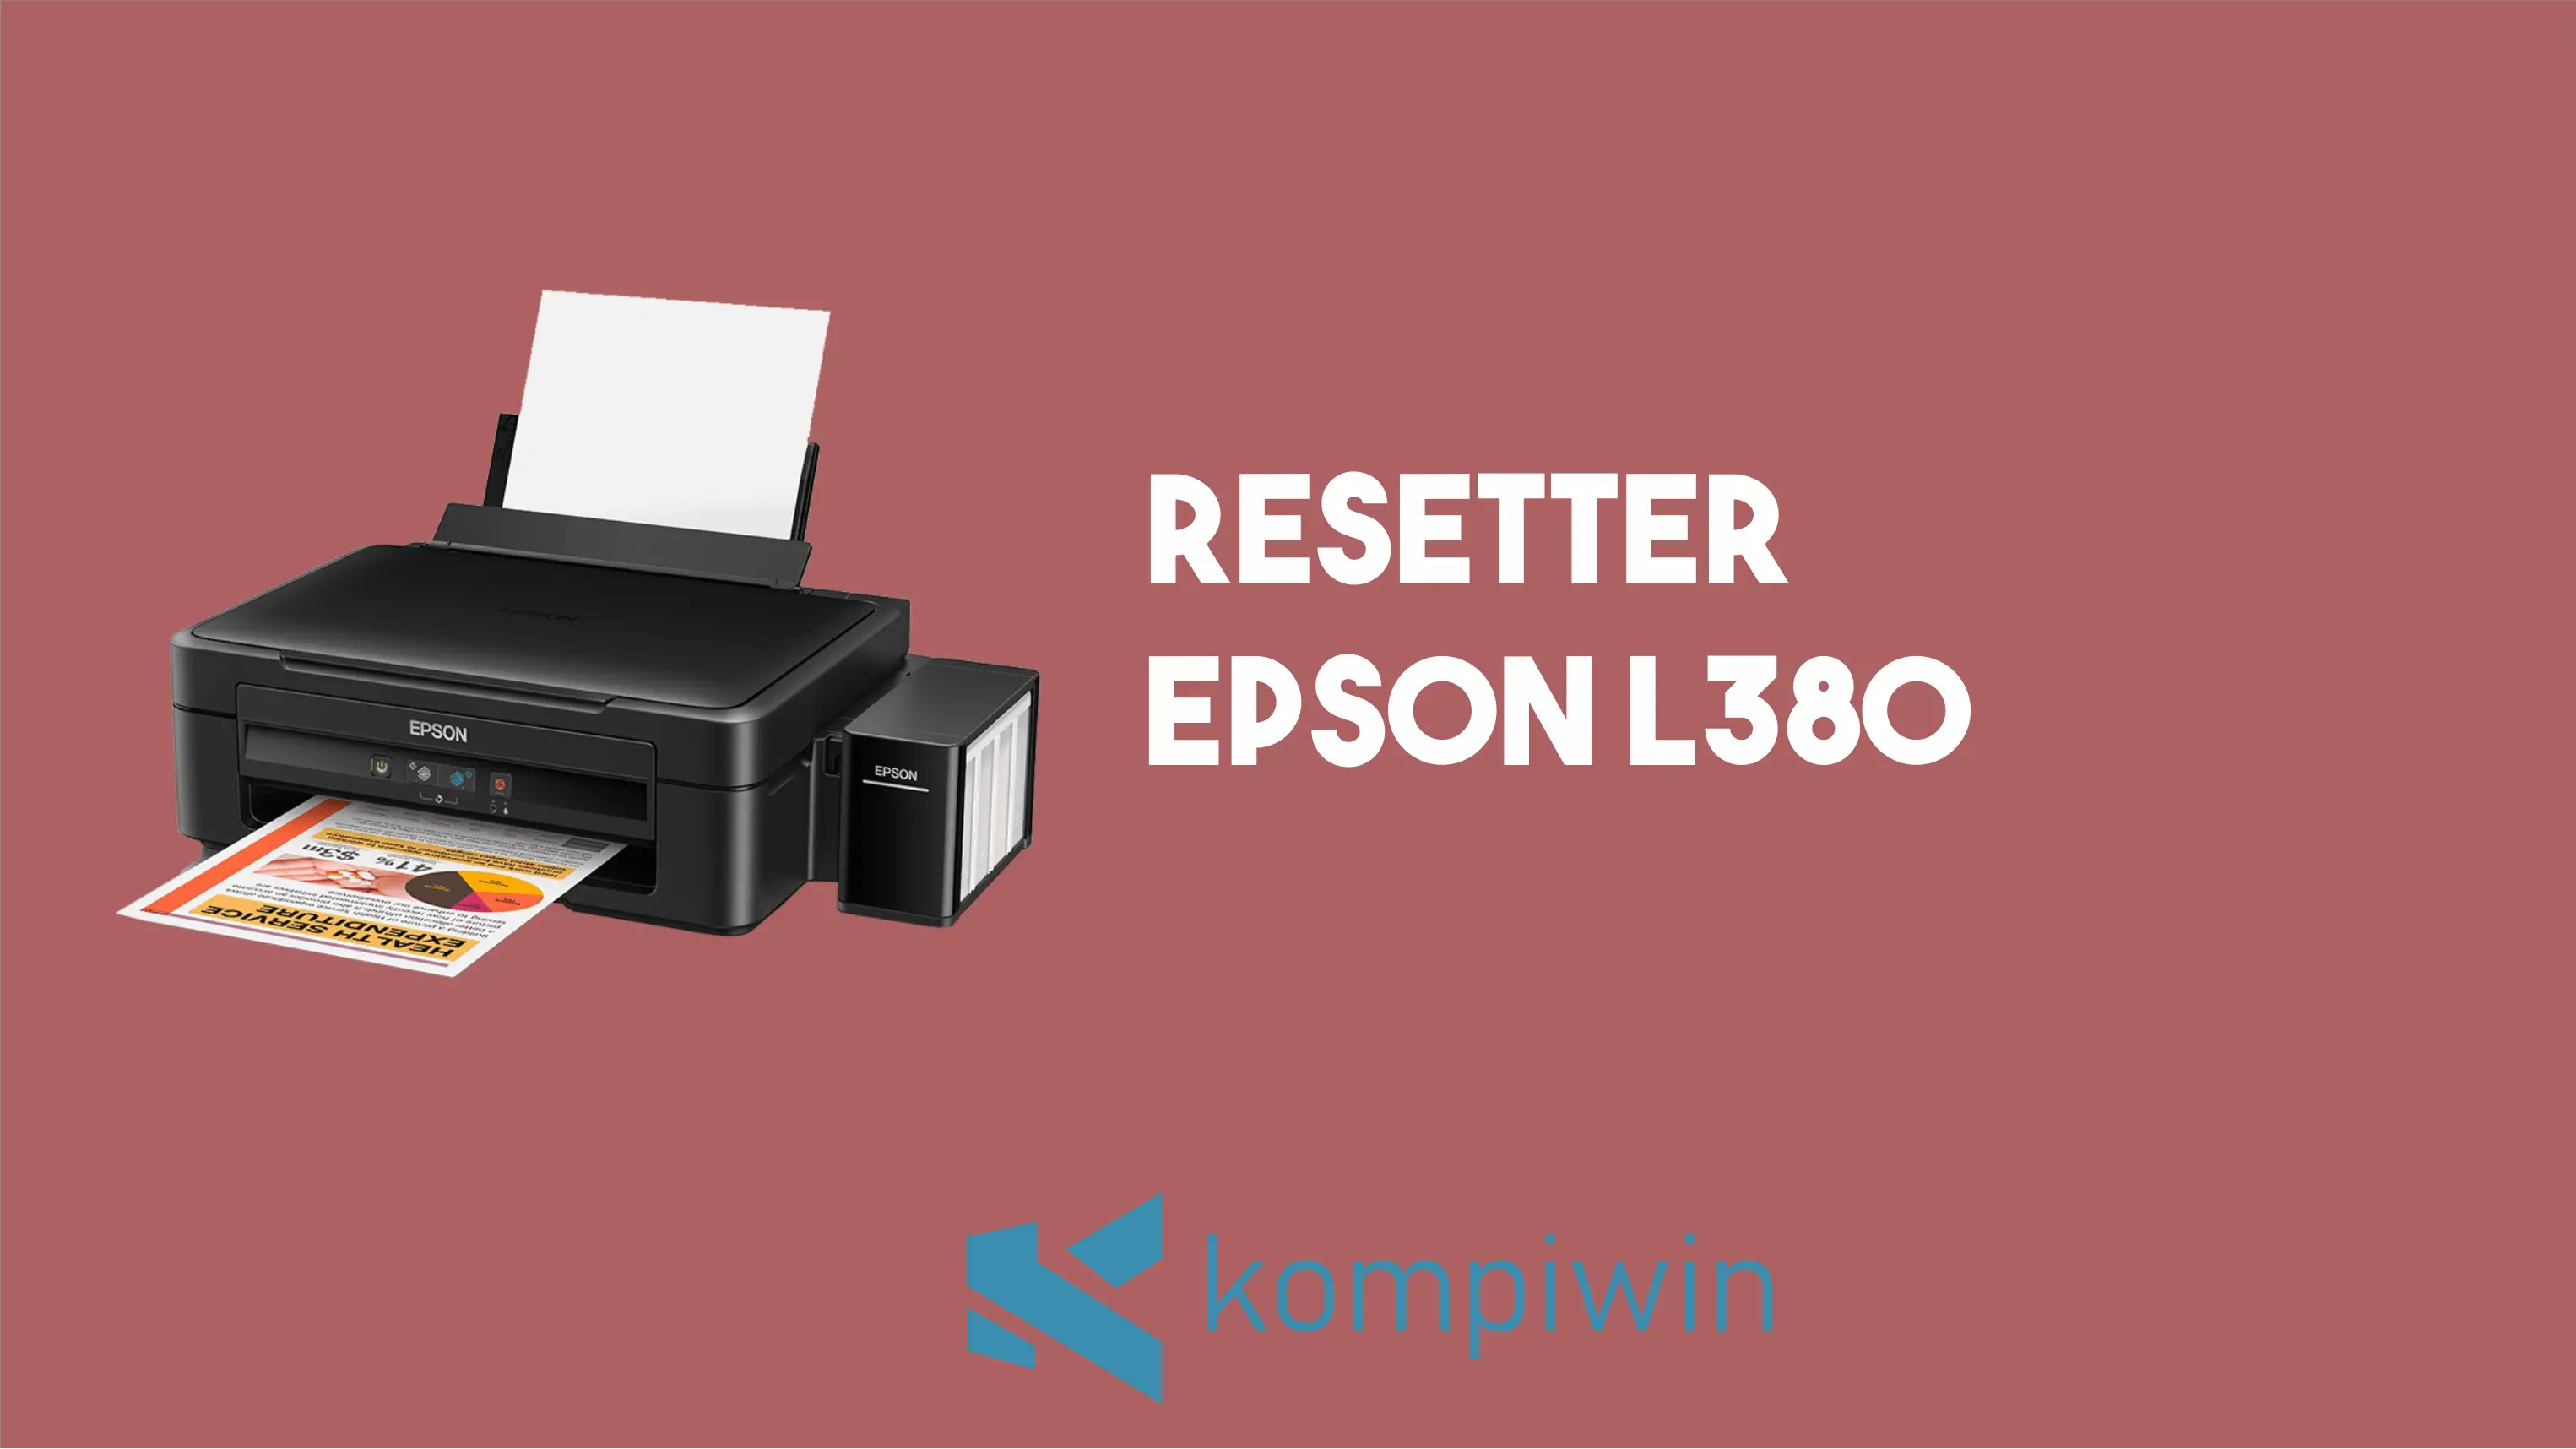 Resetter Epson L380